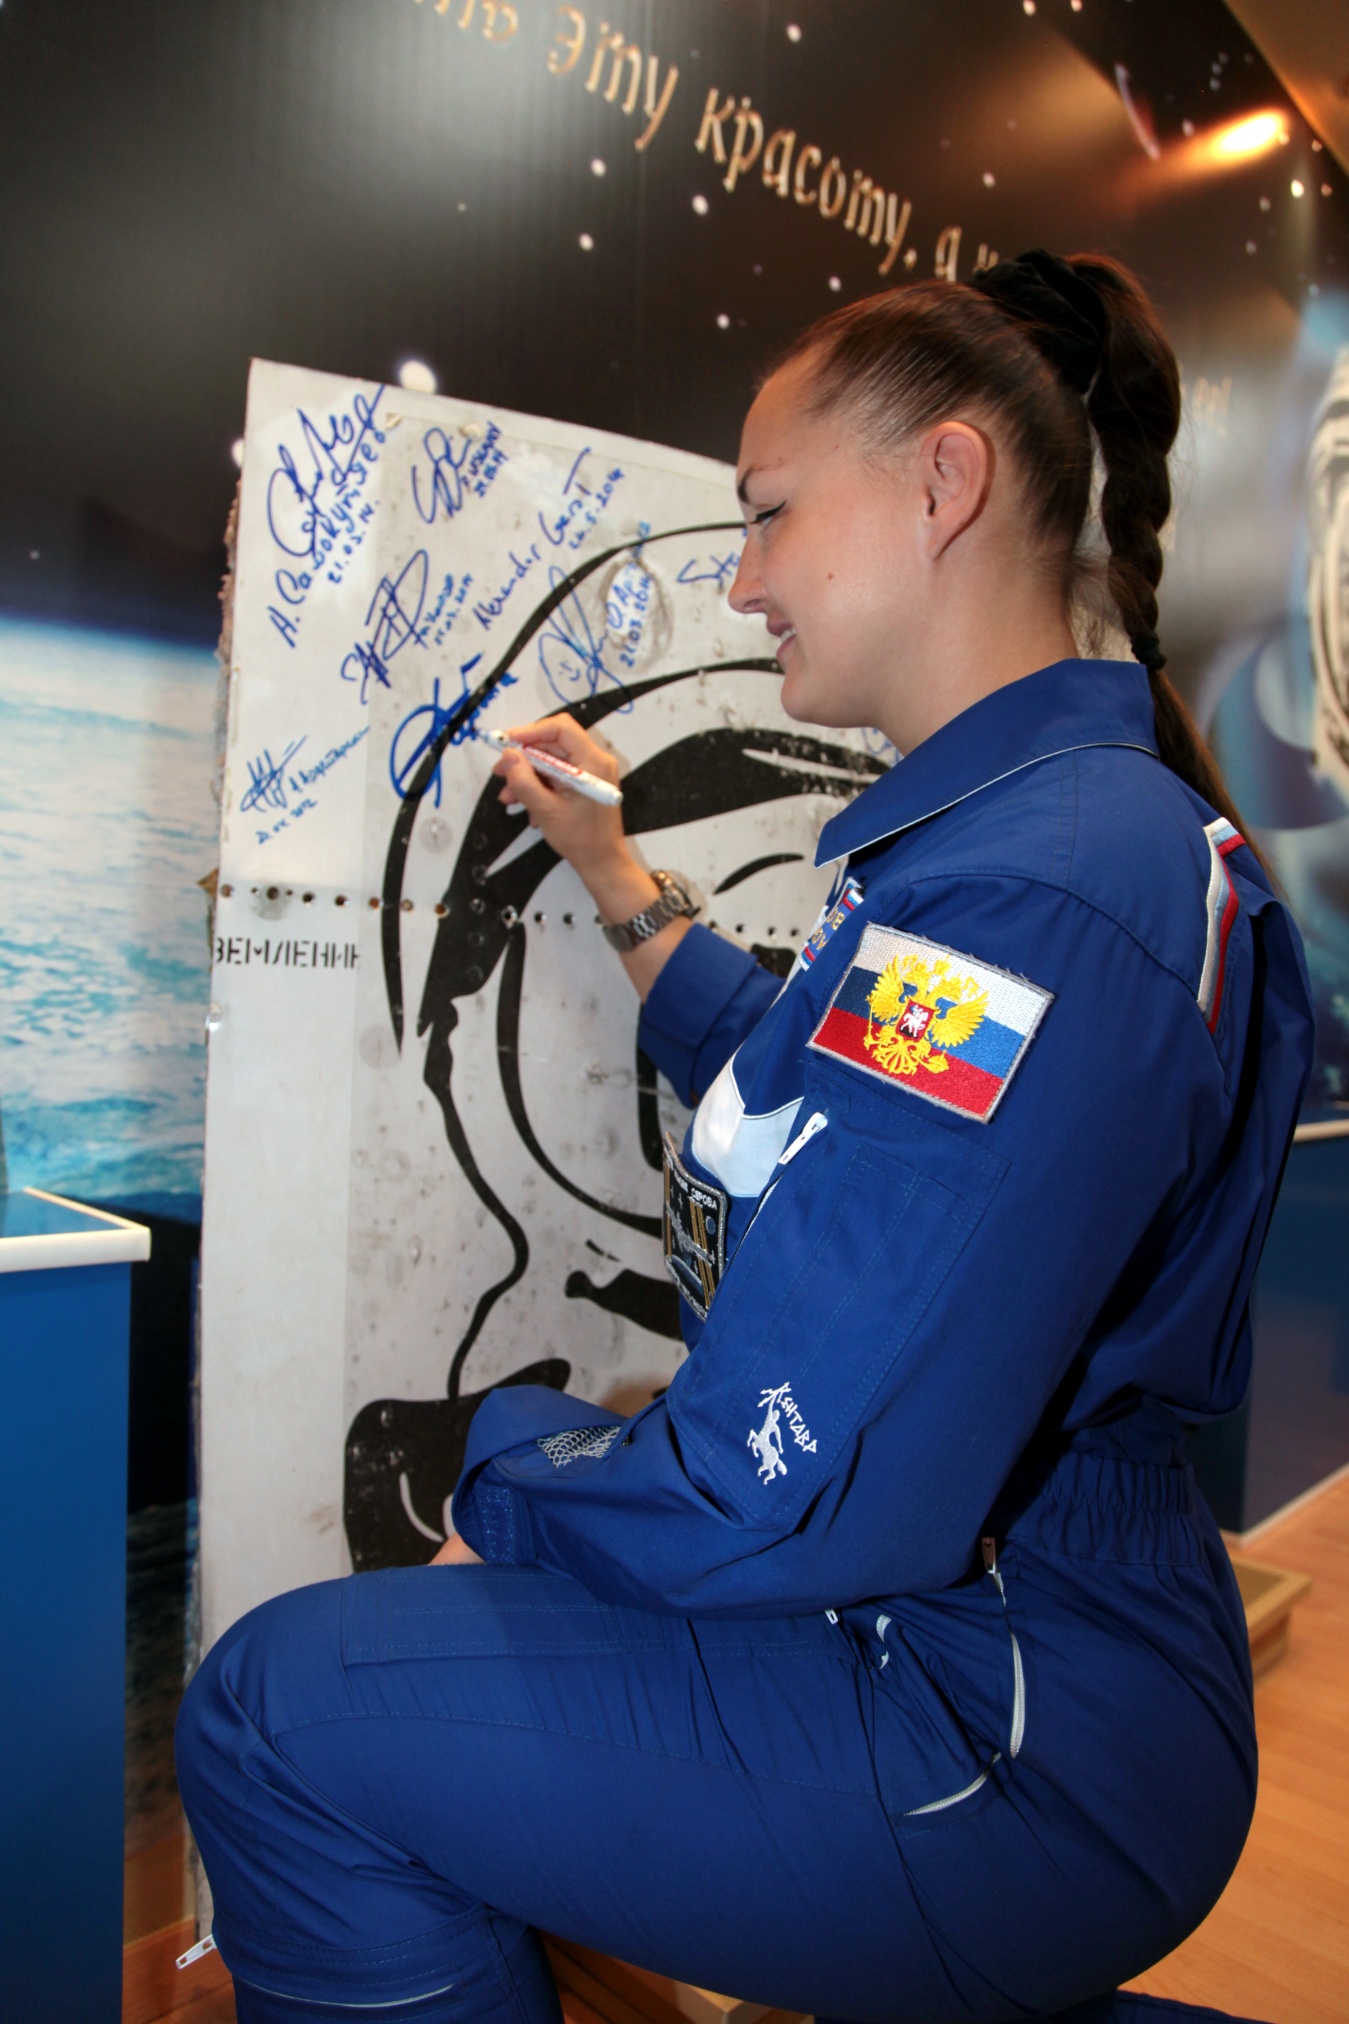 Автограф в музее космодрома Байконур. Сентябрь 2014 года